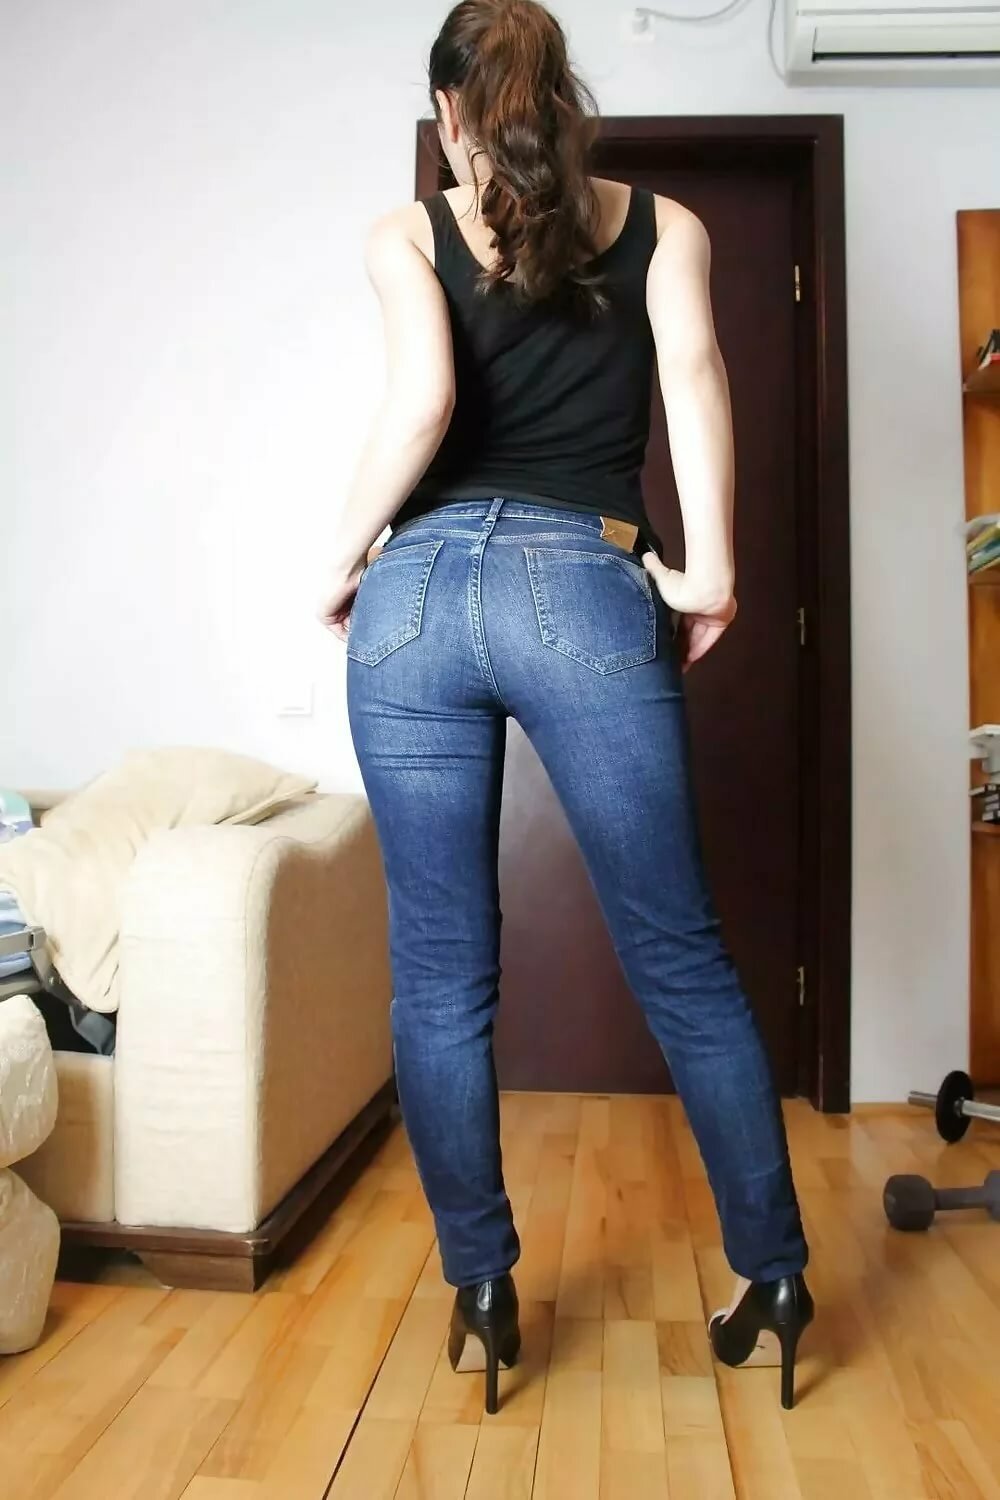 жопа в джинсах домашних фото 9